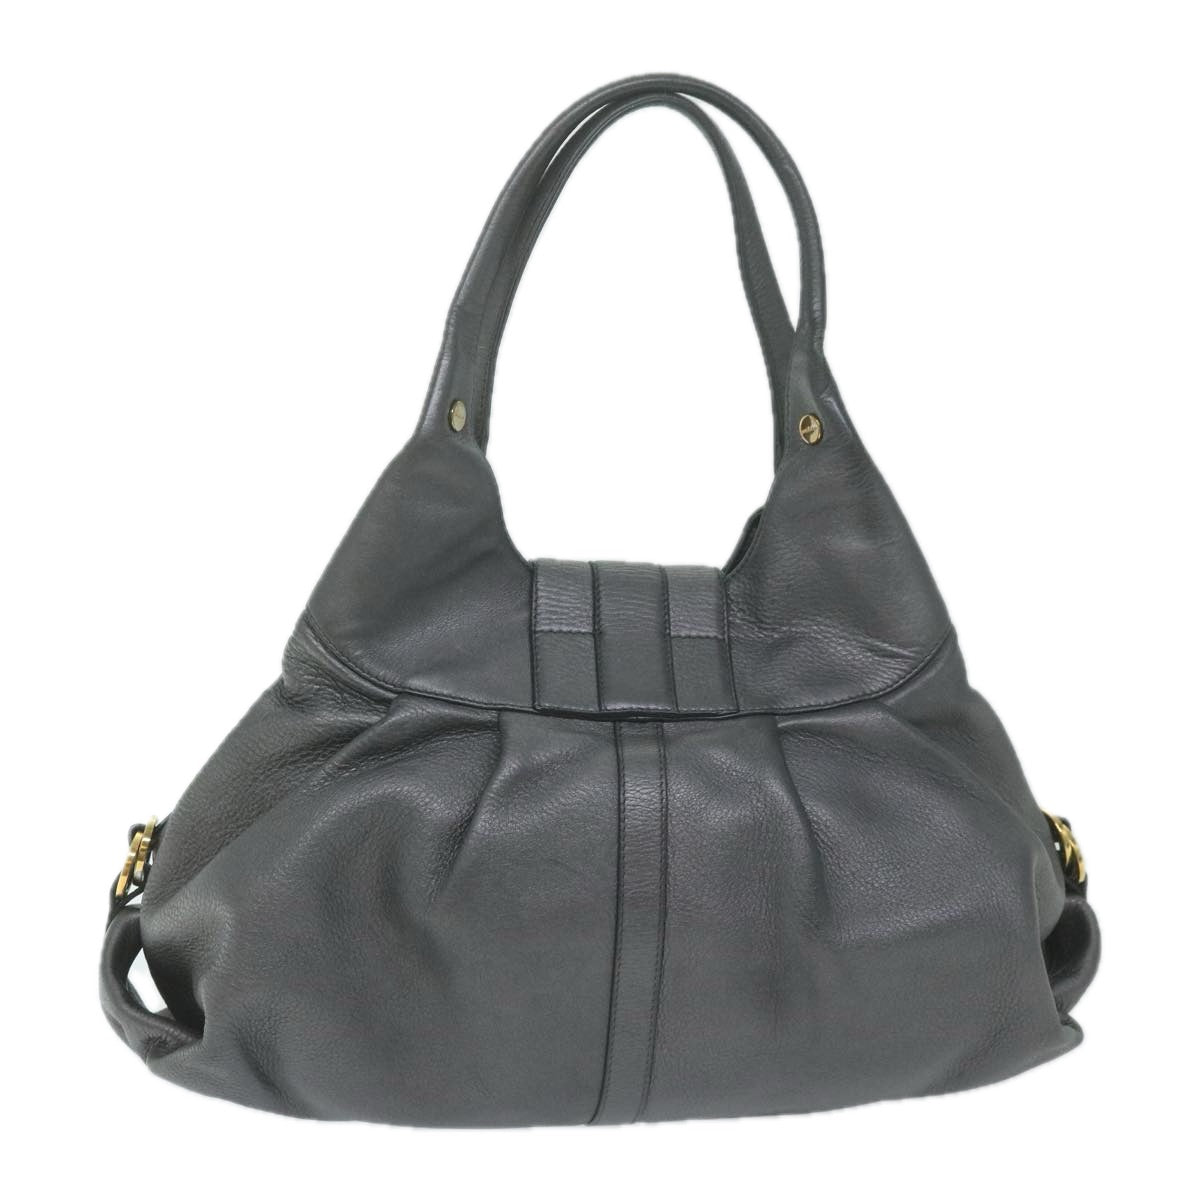 BVLGARI Chandra Hand Bag Leather Gray Auth 64348